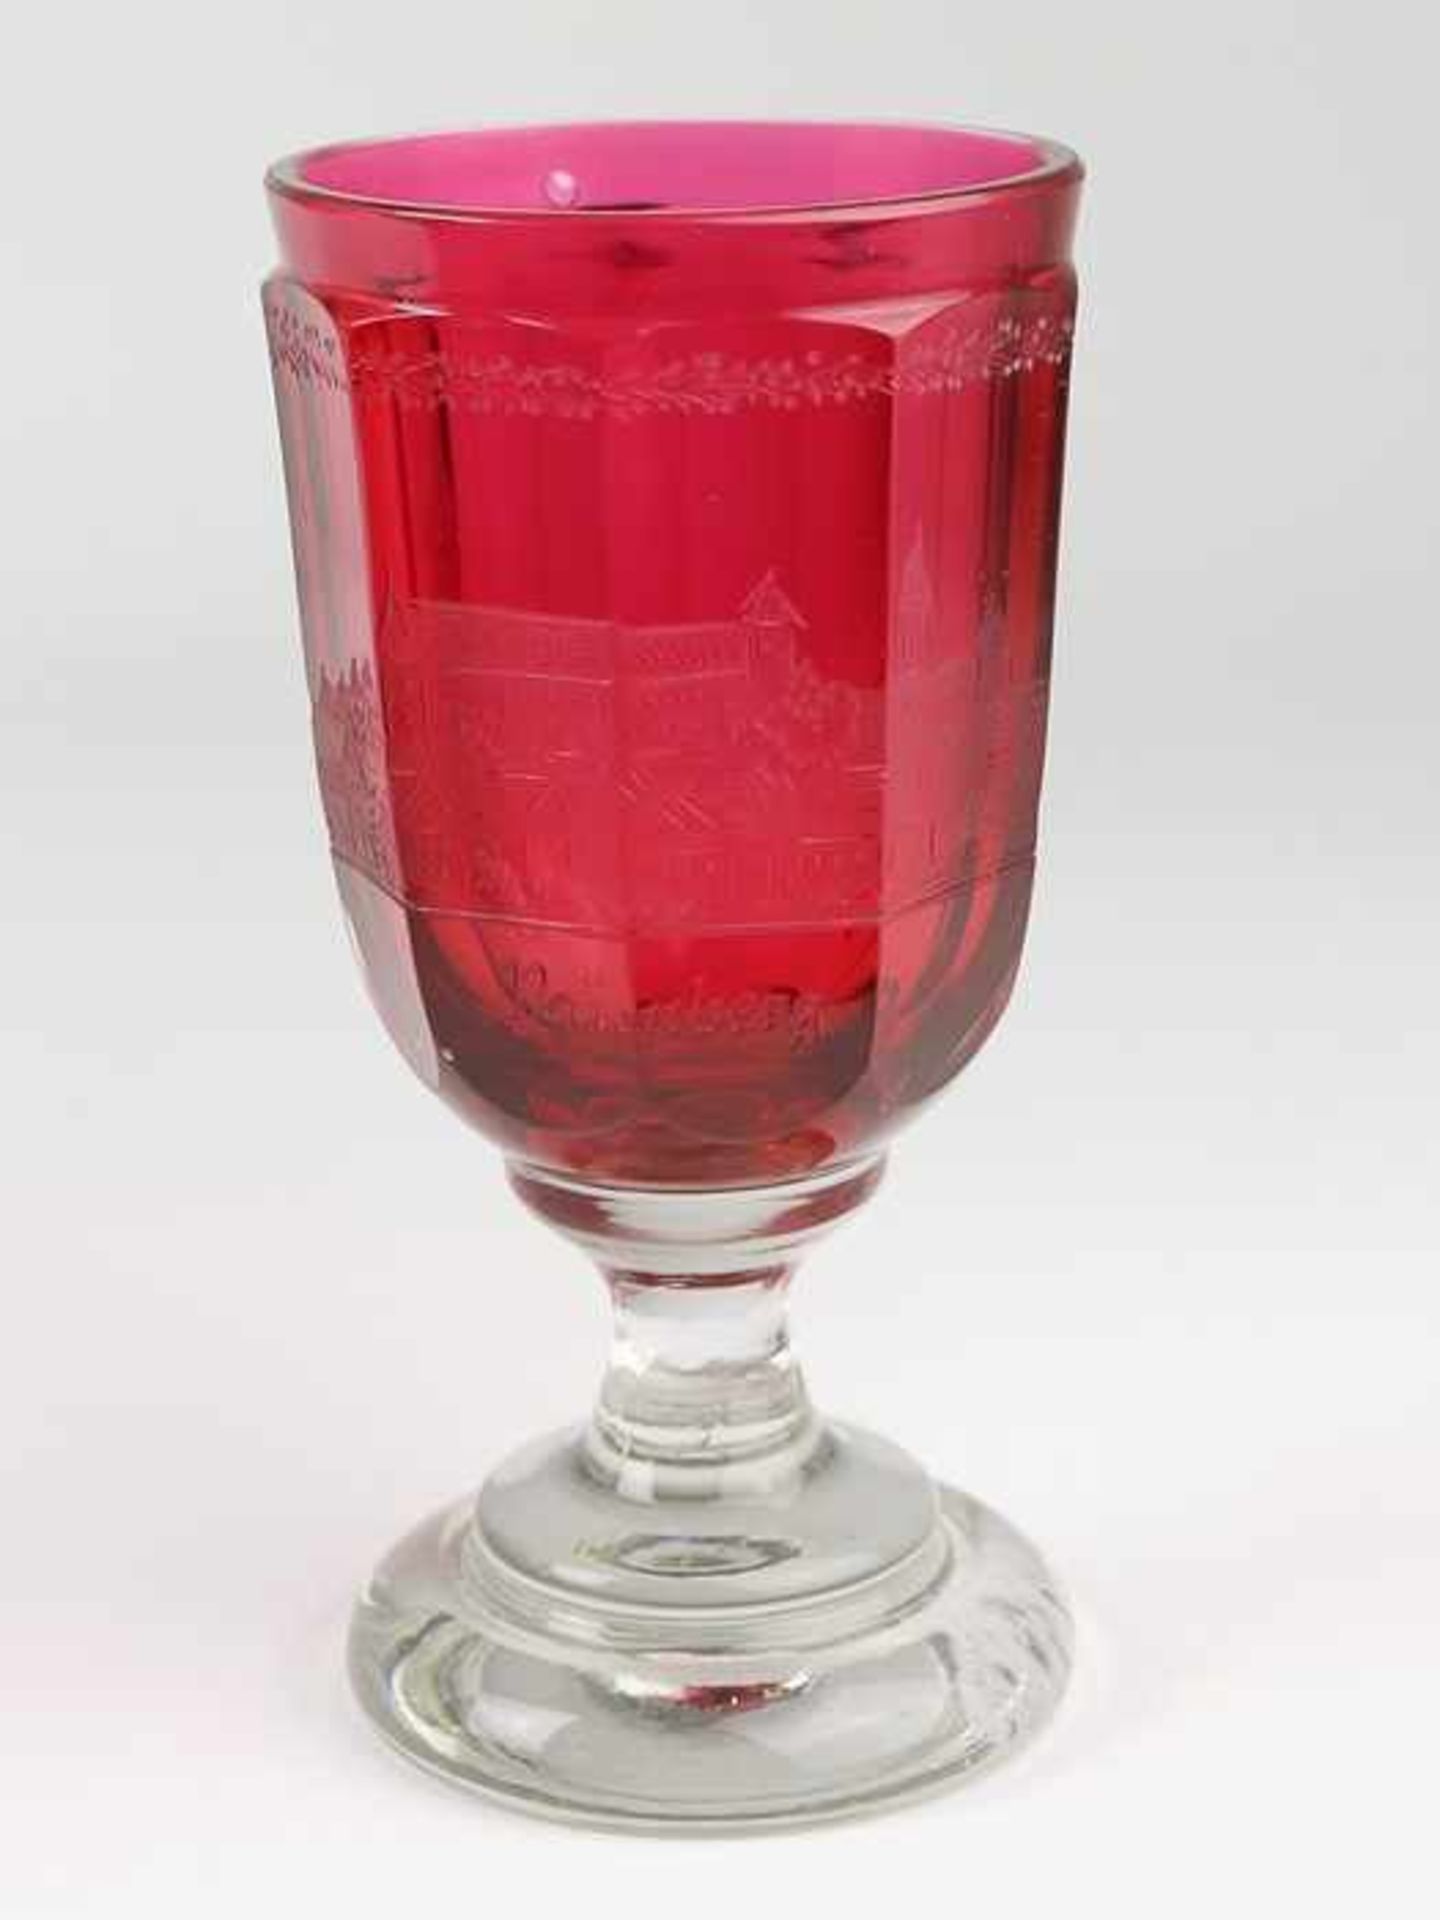 Andenkenbecher19. Jh., farbloses u. rubinfarbenes Glas, runder, zweifach gewulsteter Stand, konkaver